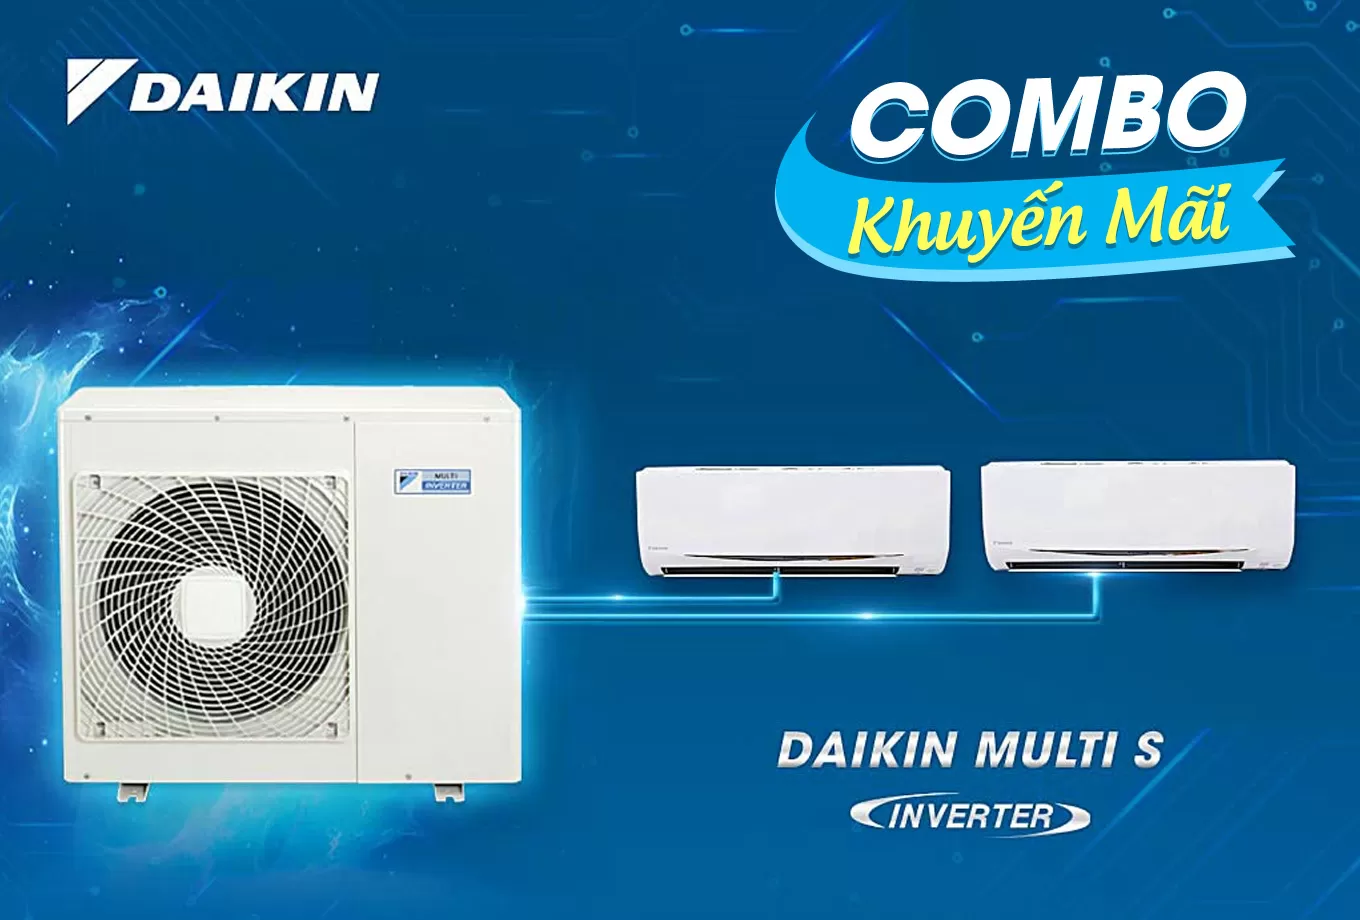 (Combo promotion) Daikin Multi S air conditioner system inverter 2.0Hp - 1 outdoor unit 2 indoor units 1.0 + 1.0Hp MKC50RVMV - CTKC25RVMV+CTKC25RVMV